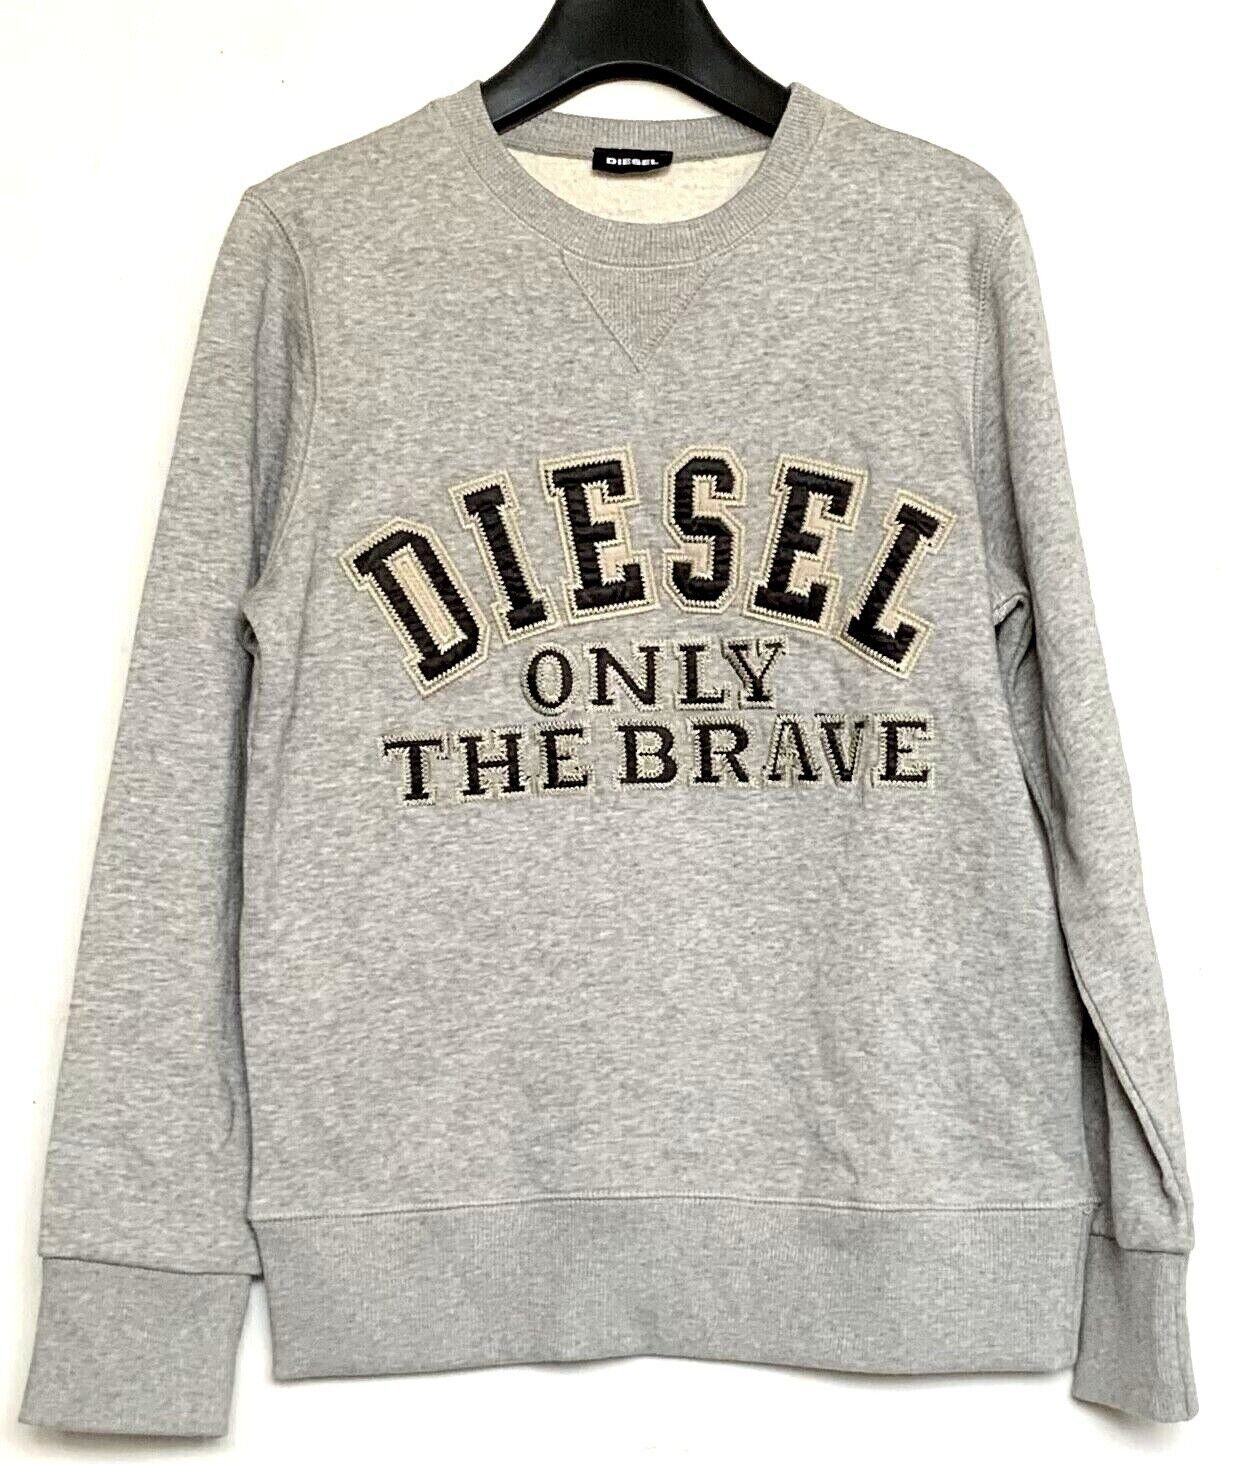 Diesel Sweatshirt Diesel Kinder Pullover, Diesel Sweatshirt, Diesel Jeans Kinder Pullover Grau | Sweatshirts